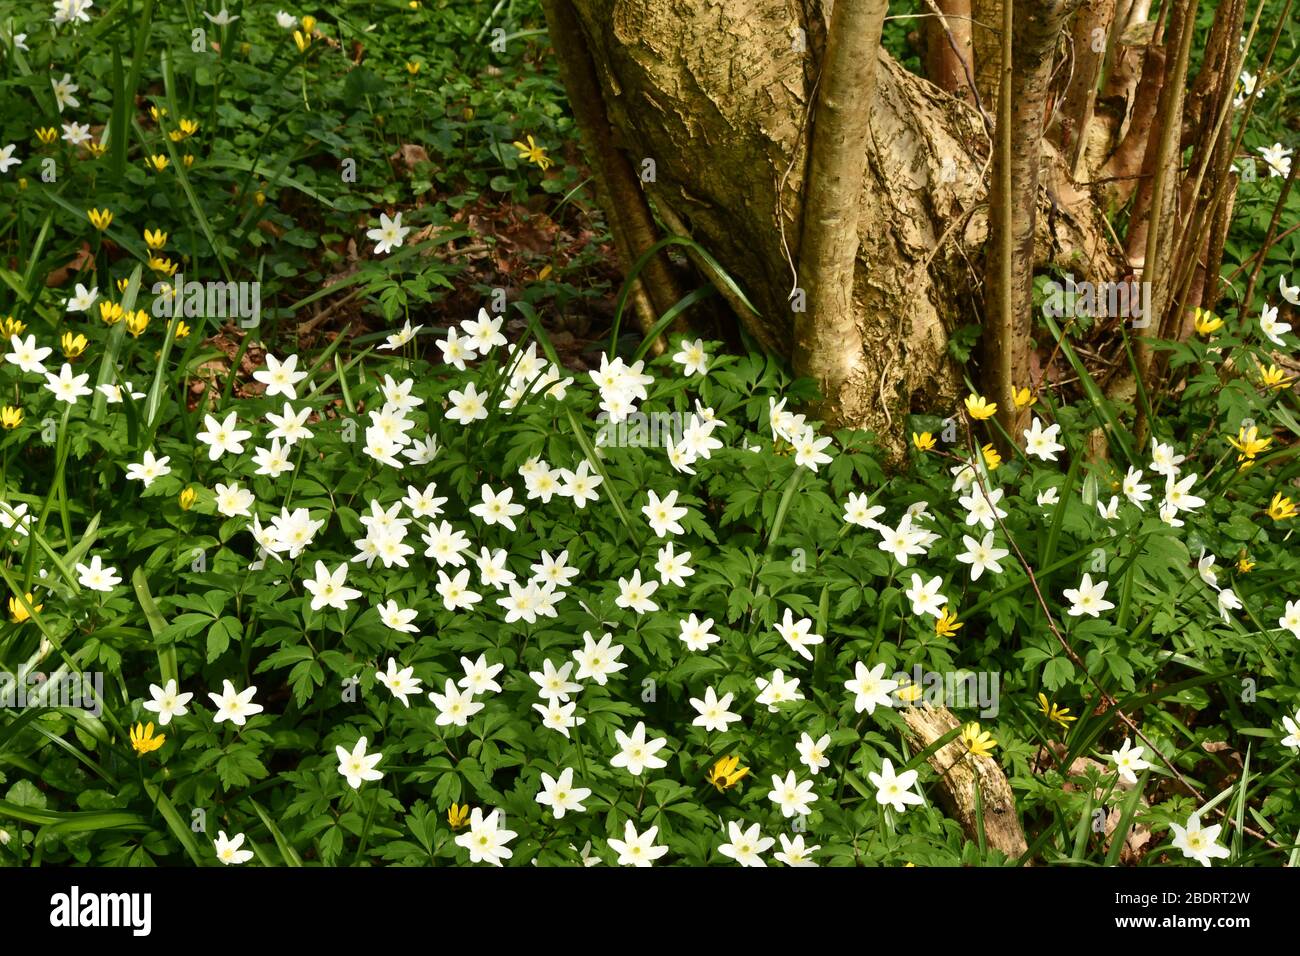 Bois Anemone 'Anemone nemorosa' et Lesser Celandine 'Ranunculus ficaria' tapis le sol du bois autour d'un vieux arbre de Hazel en coppique 'Corylus avel Banque D'Images